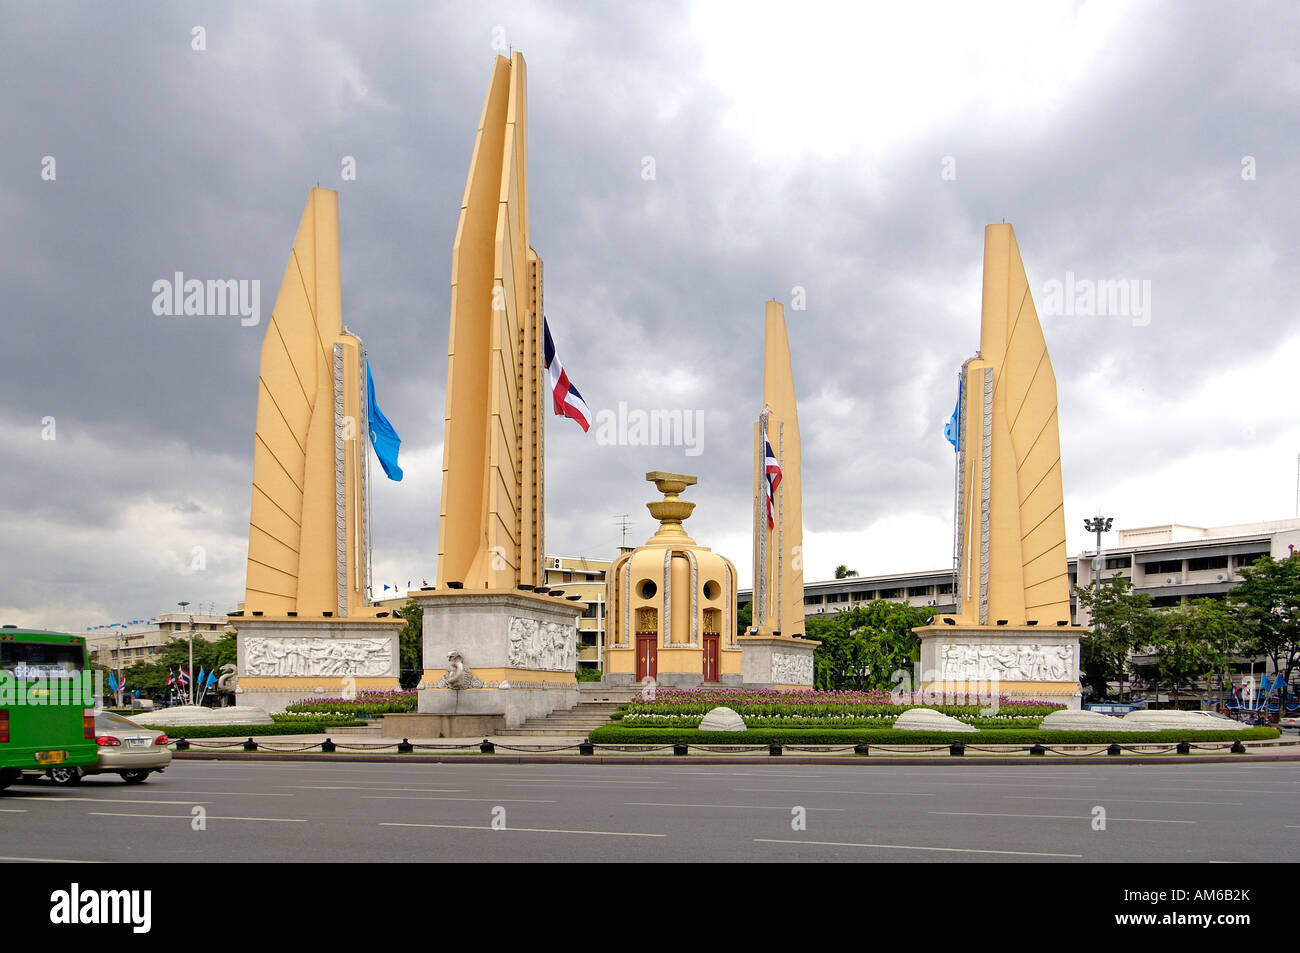 Memorial of democracy in bangkok, thailand Stock Photo